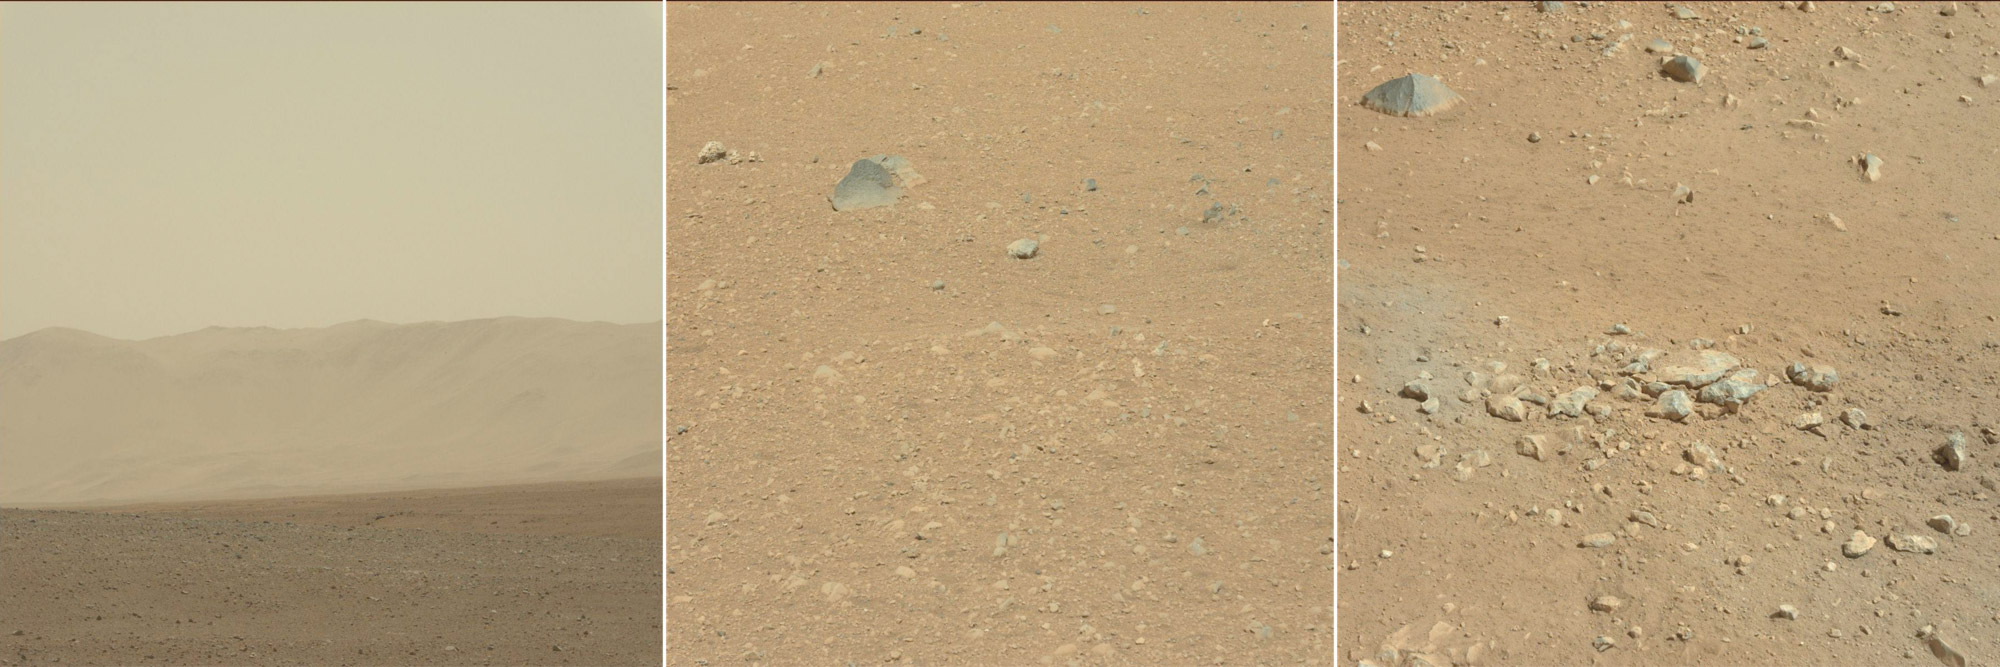 Plus d'une semaine après l'atterrissage de Curiosity, les premières images haute résolution nous montrent le nouvel environnement du rover. Des parois du cratère Gale, qui ressemble à des montagnes terrestres, aux rochers environnants l'engin, le site du rover a de quoi faire pour nous montrer en quoi Mars est différente de la Terre ! © Nasa/JPL-Caltech/MSSS